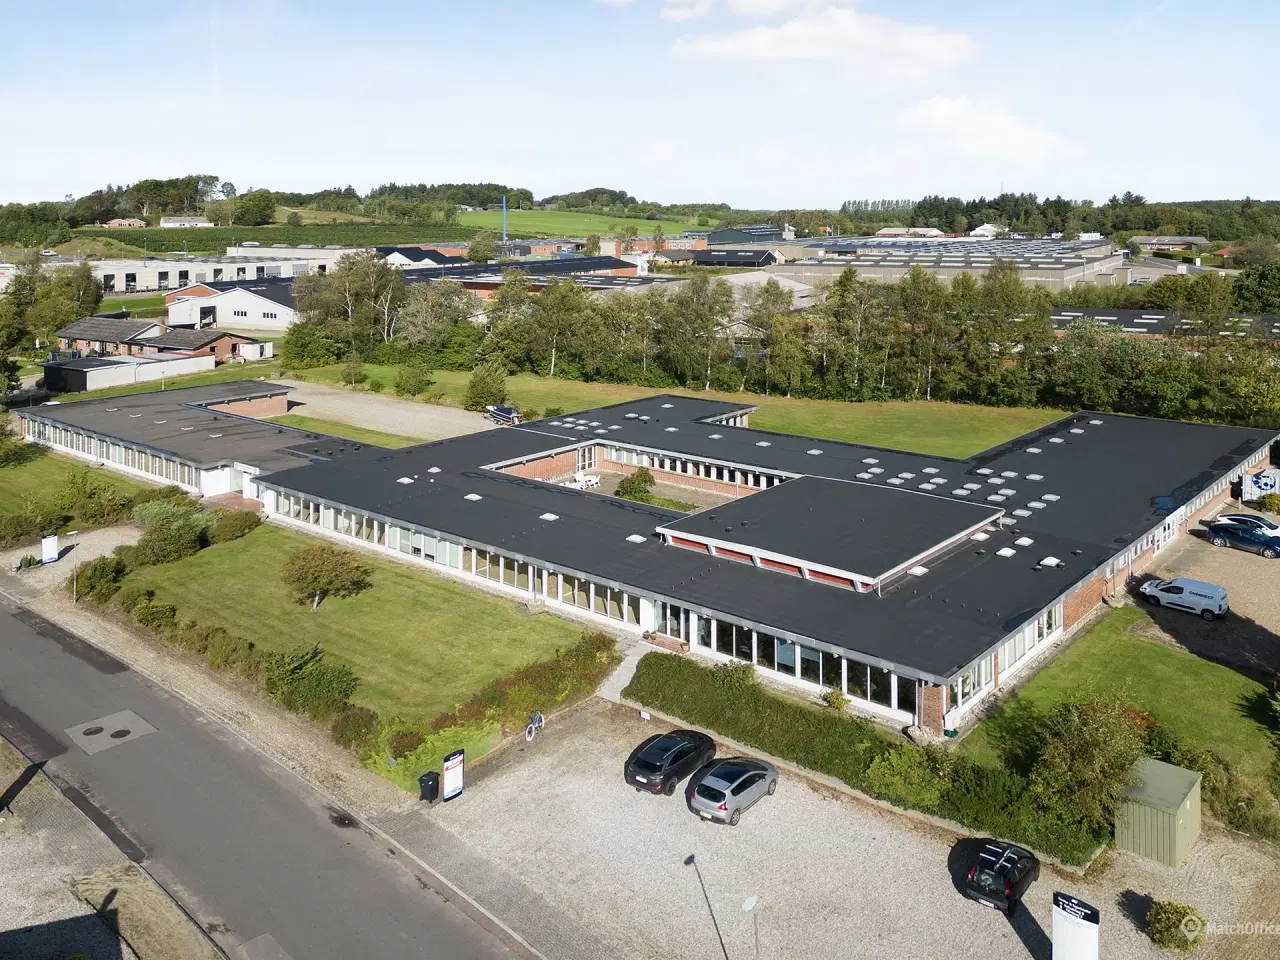 Billede 1 - Fleksible kontorlokaler i Erhvervscentret Silkeborg Syd - 10 min. kørsel til Silkeborg C og 25 min. til E45 Horsens S, Aarhus S og V samt Skanderborg.